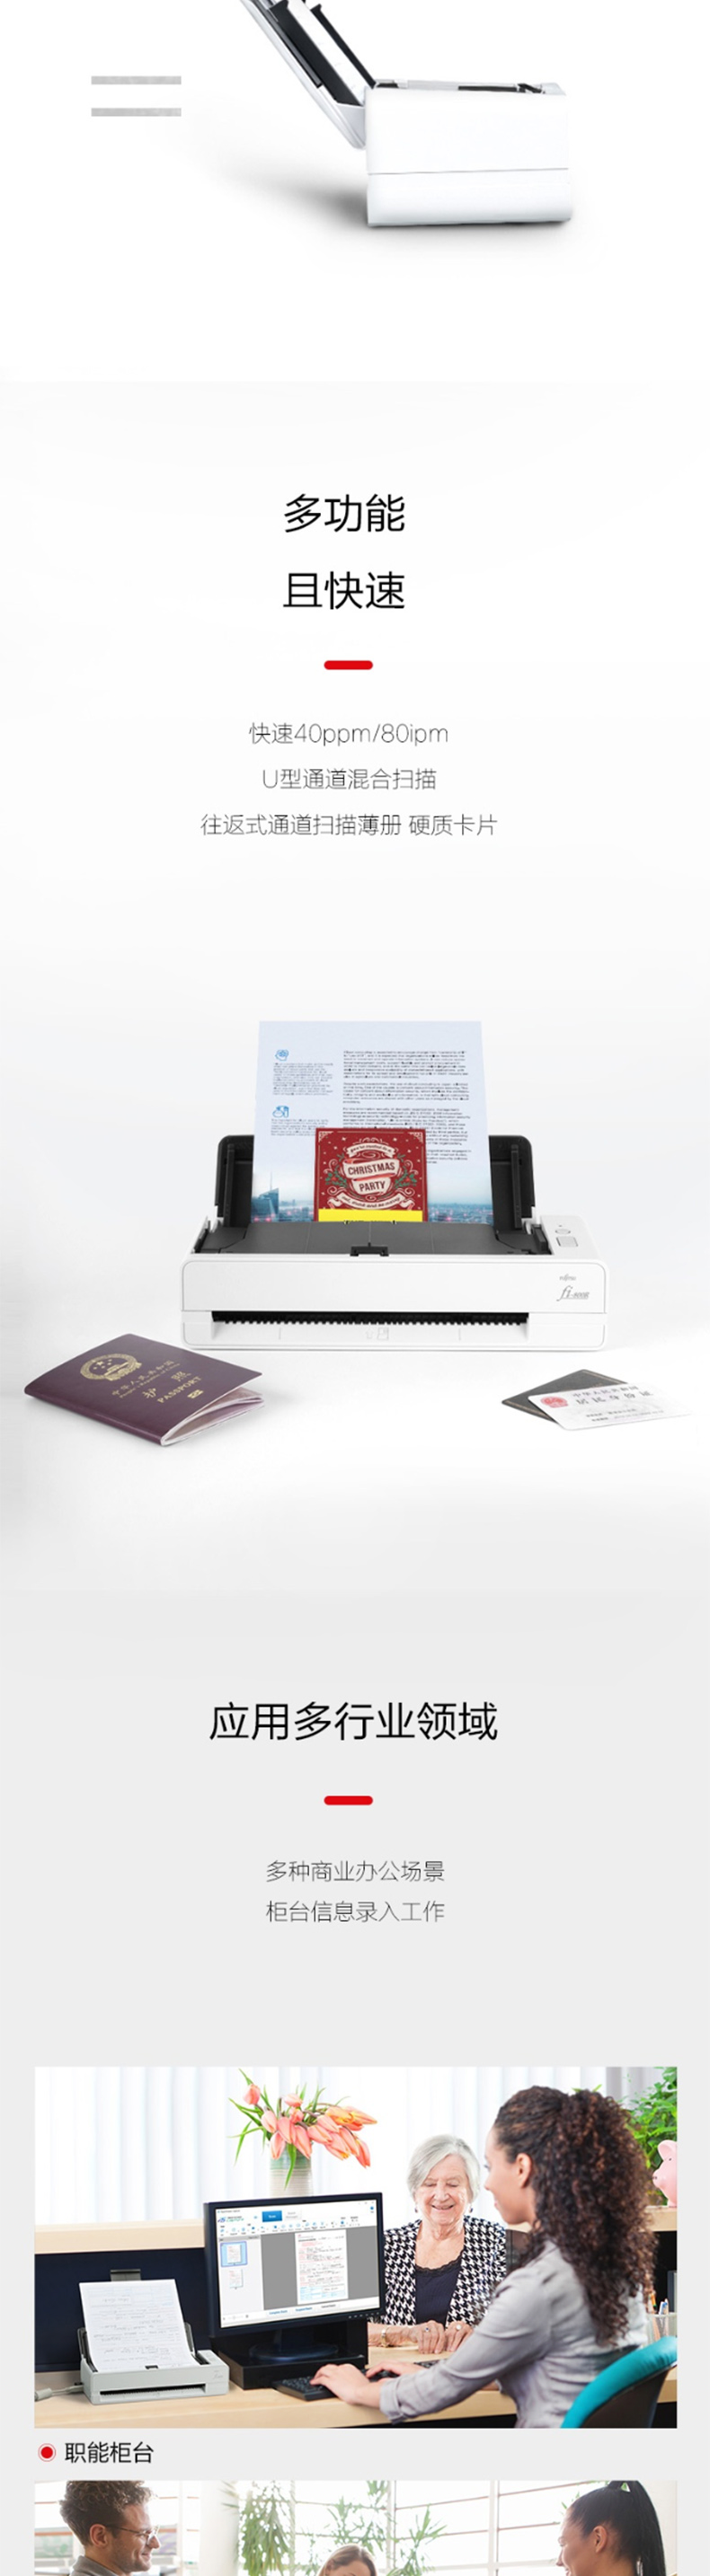 富士通 FUJITSU A4高速高清彩色双面桌面办公馈纸式双通道护照身份证扫描仪 40页80面/分钟 Fi-800R 